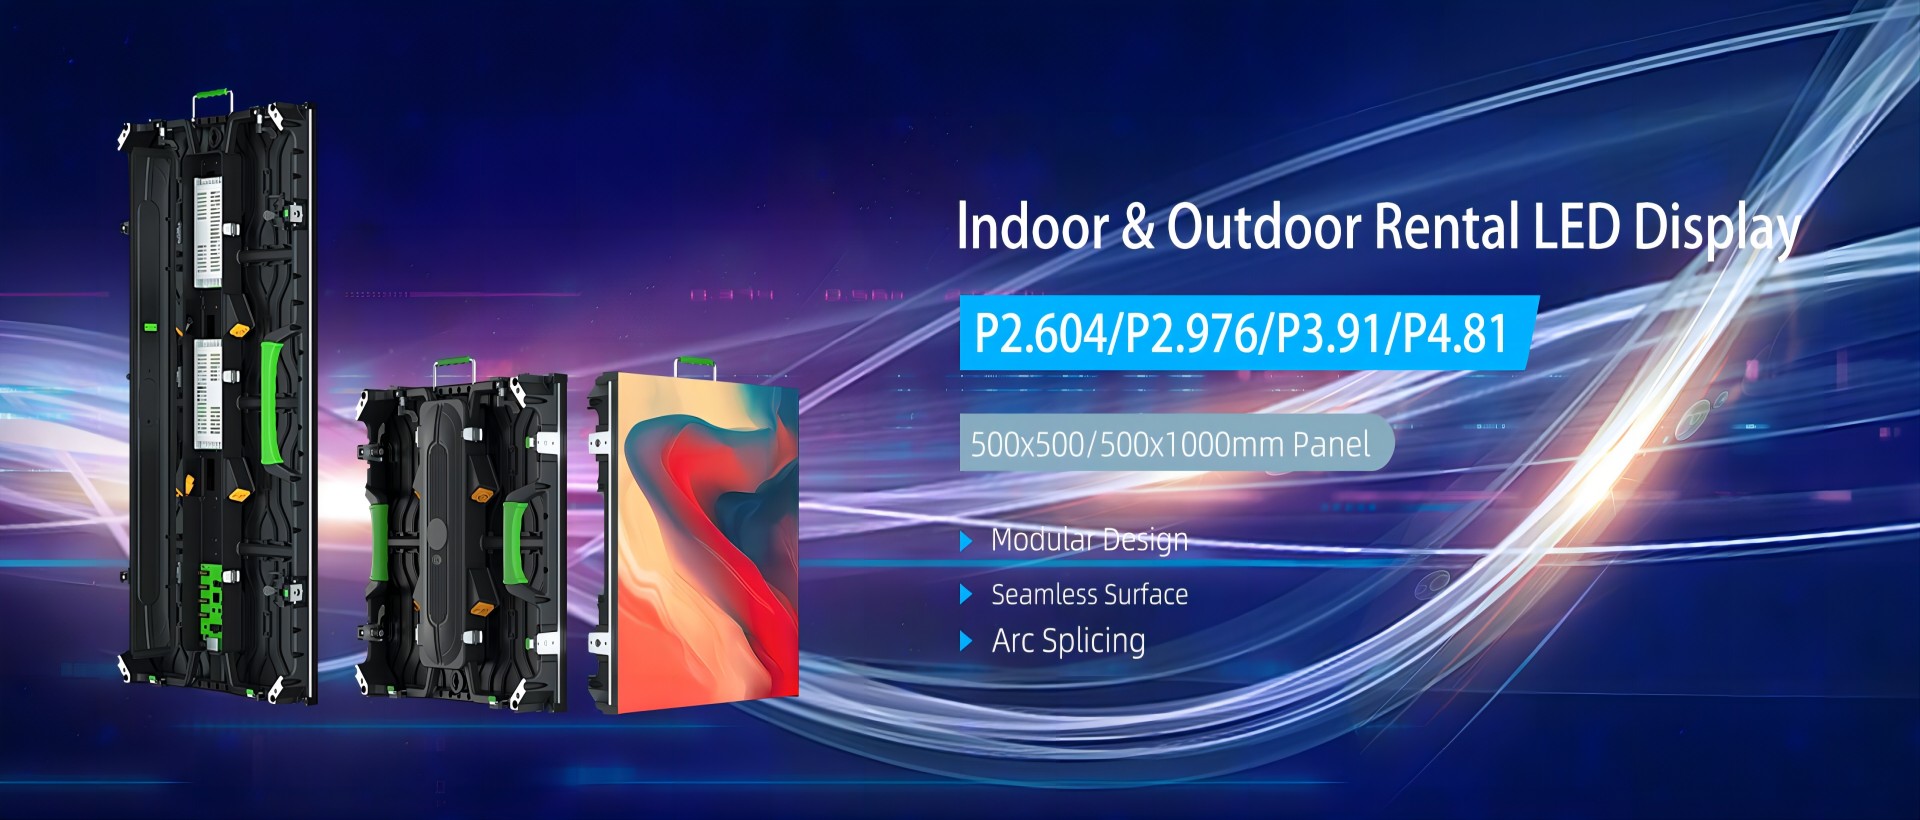 Indoor&Outdoor Rental LED Display Supplier